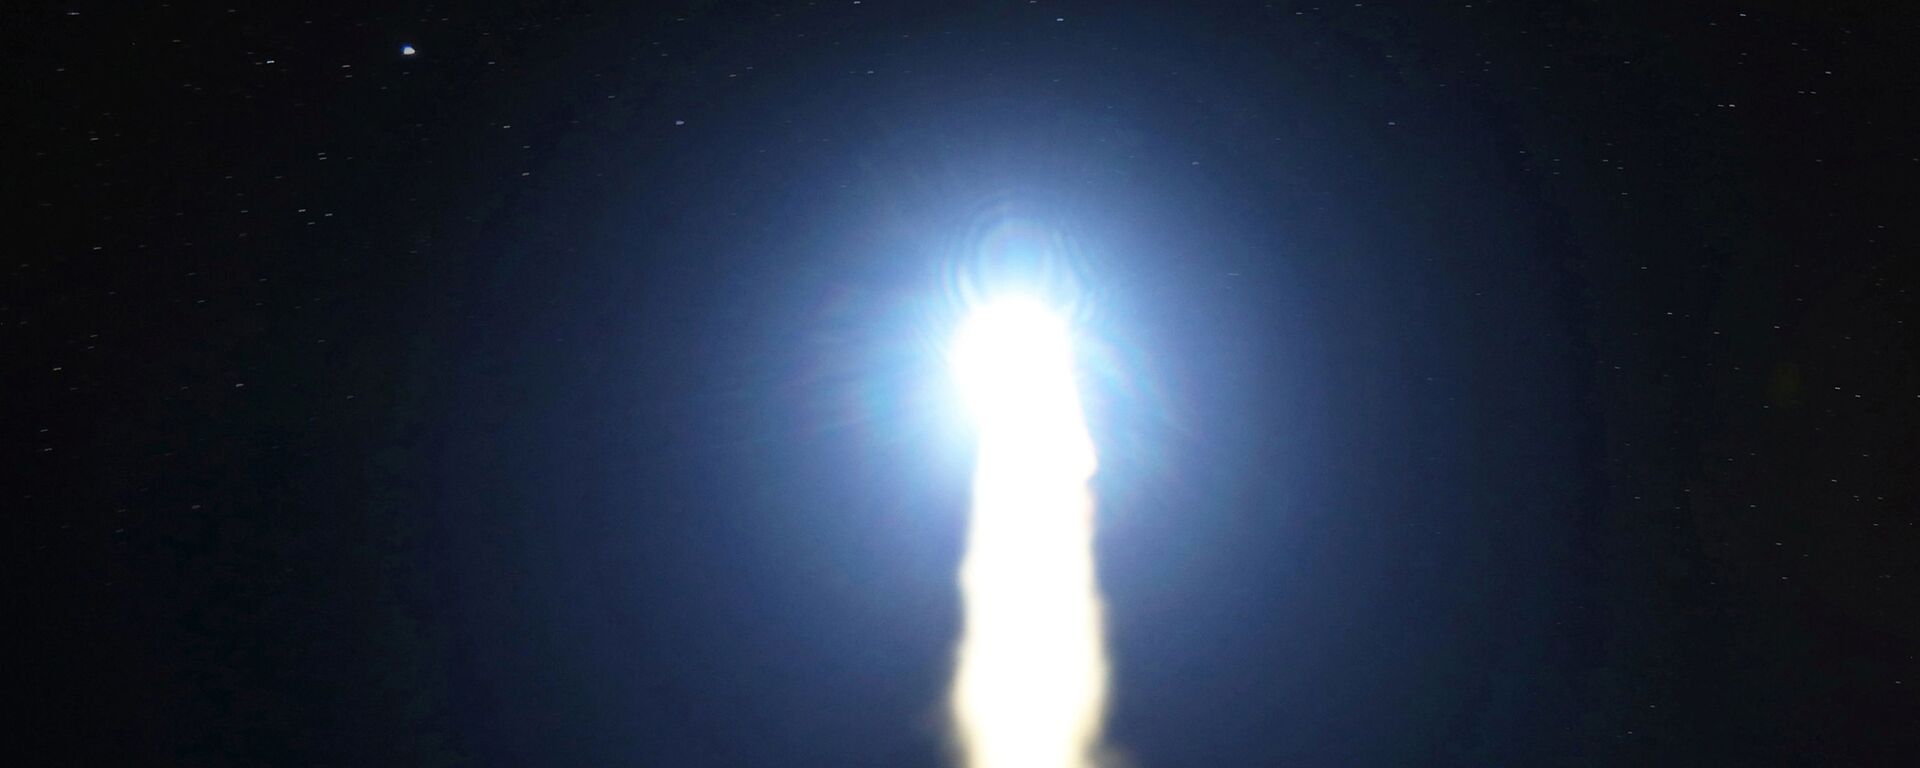 Запуск межконтинентальной баллистической ракеты Hwasong-15 в КНДР  - Sputnik Mundo, 1920, 05.01.2022